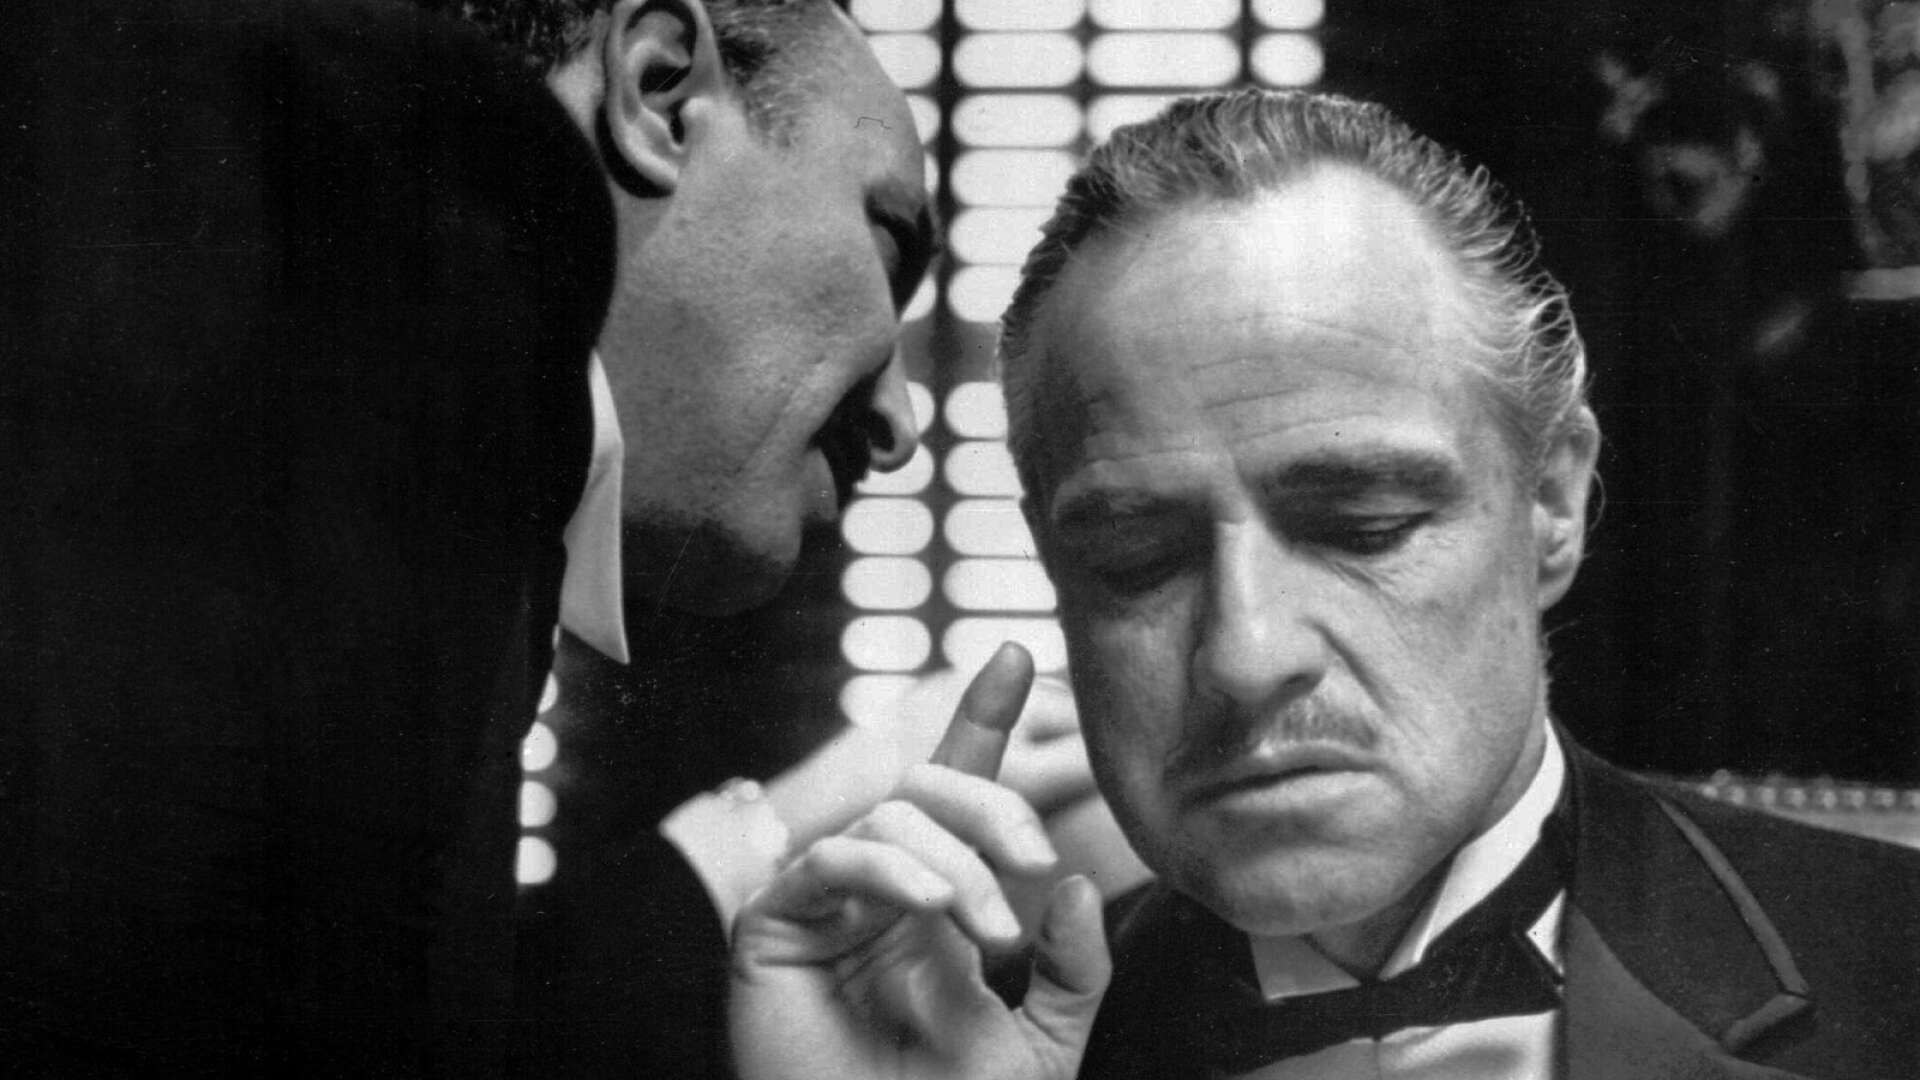 Sluta med att tänka ”nja, det var väl inte så farligt”. Jag syftar på de maffialiknande metoder som används av företagare, skriver insändarskribenten. På bilden syns Marlon Brando som Don Corleone i filmen Gudfadern. 